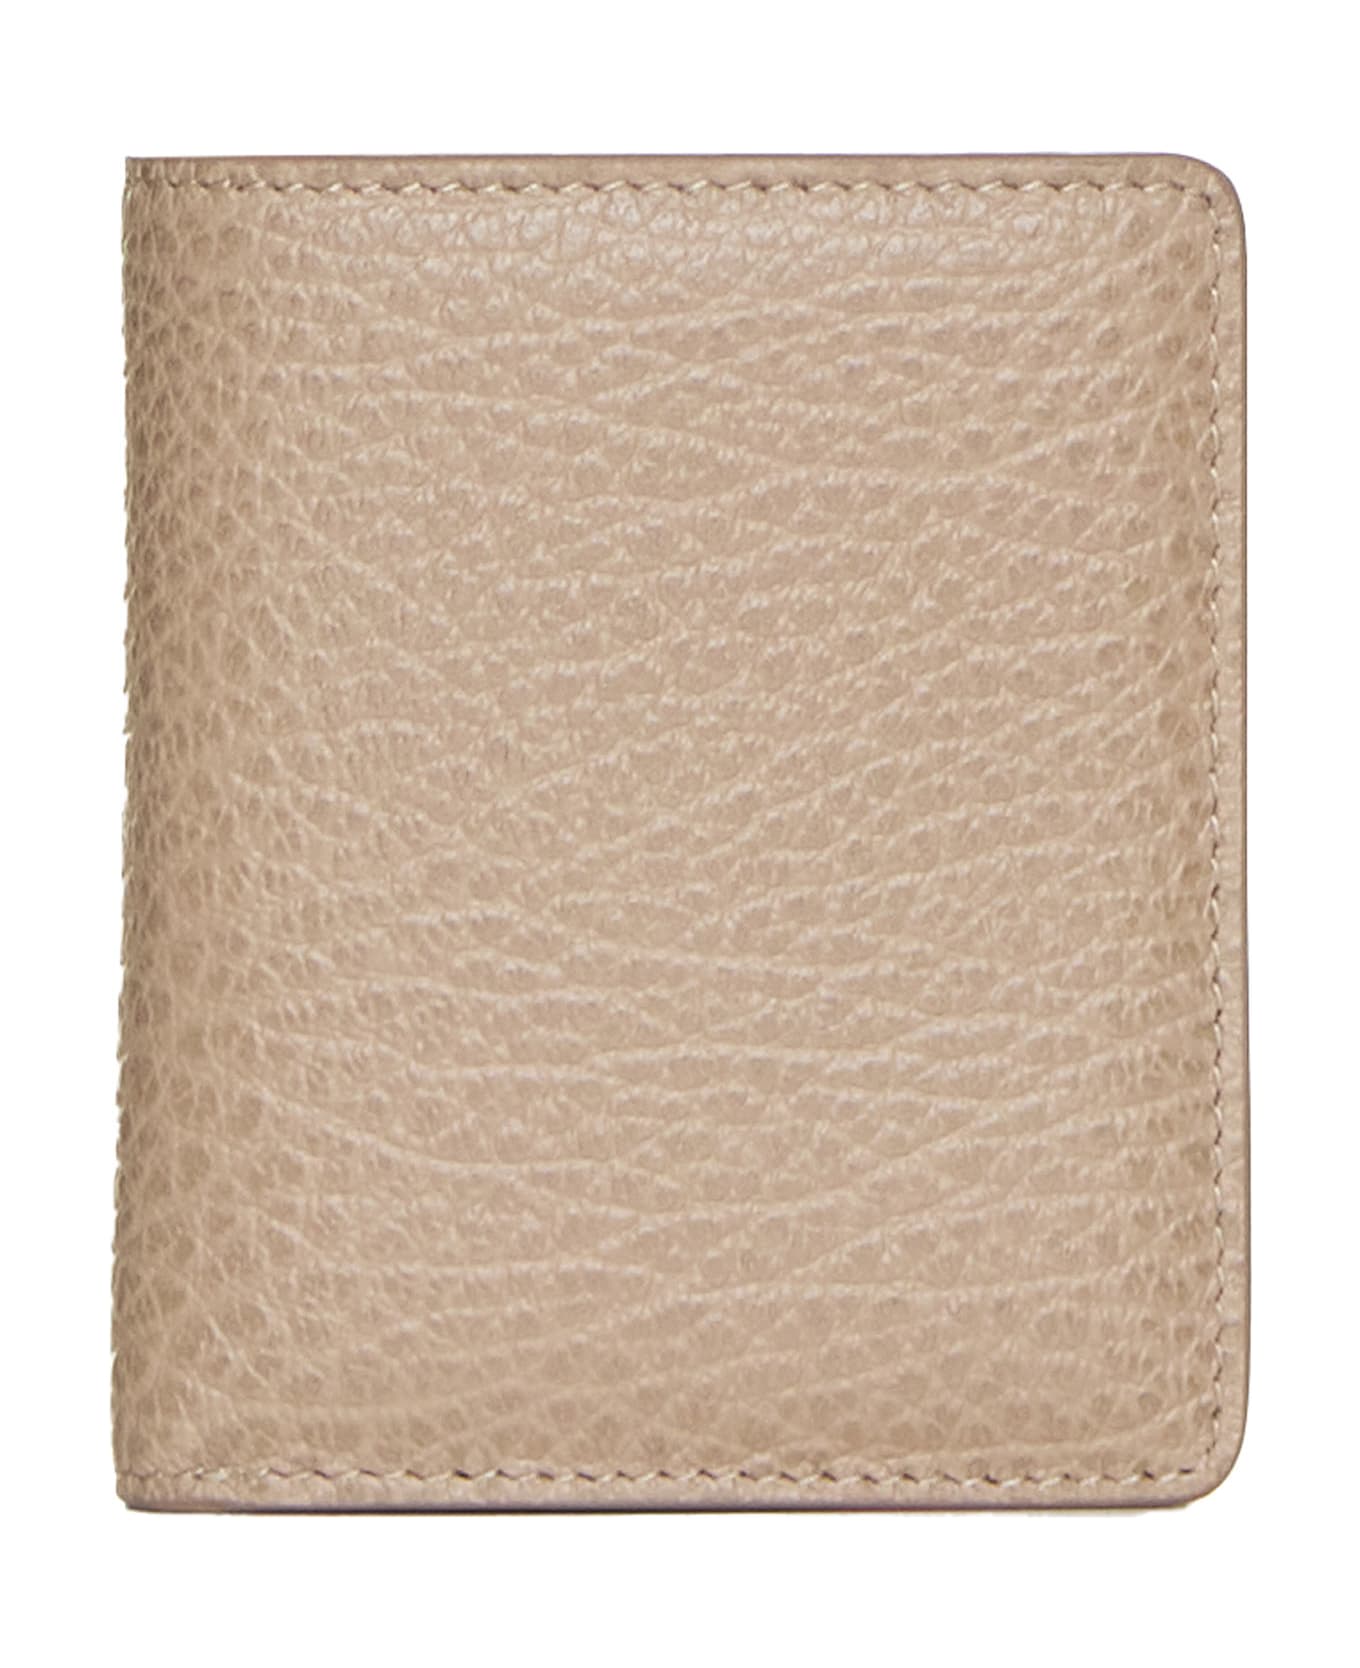 Maison Margiela Four-stitches Compact Wallet - Biche 財布